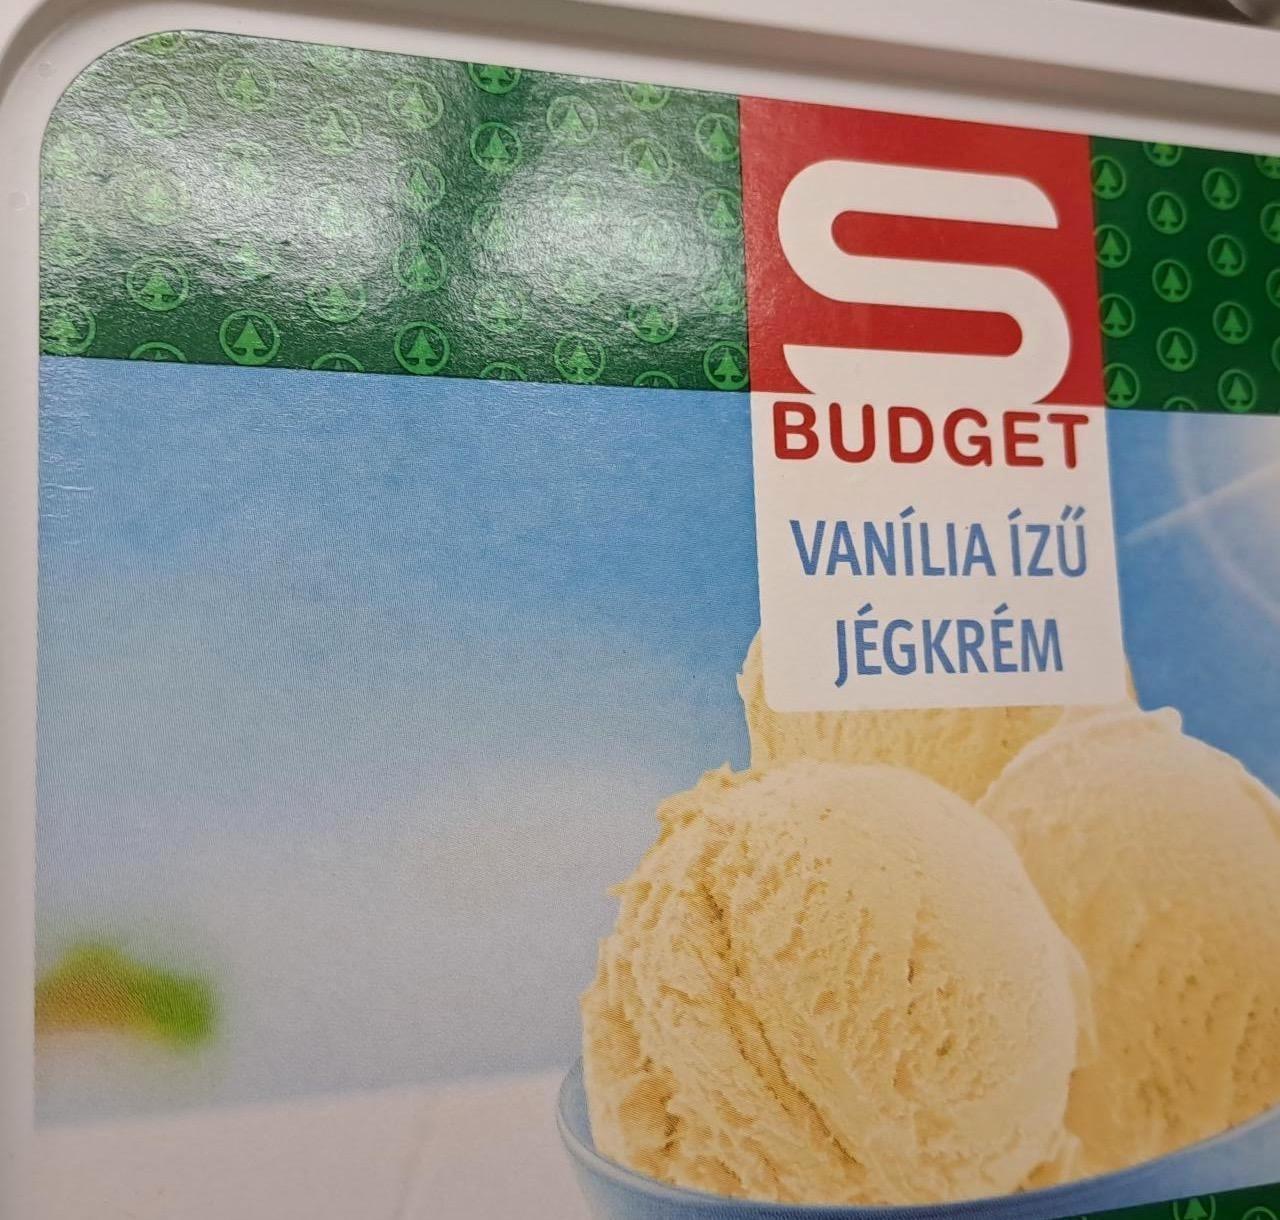 Képek - Vanília ízű jégkrém S Budget